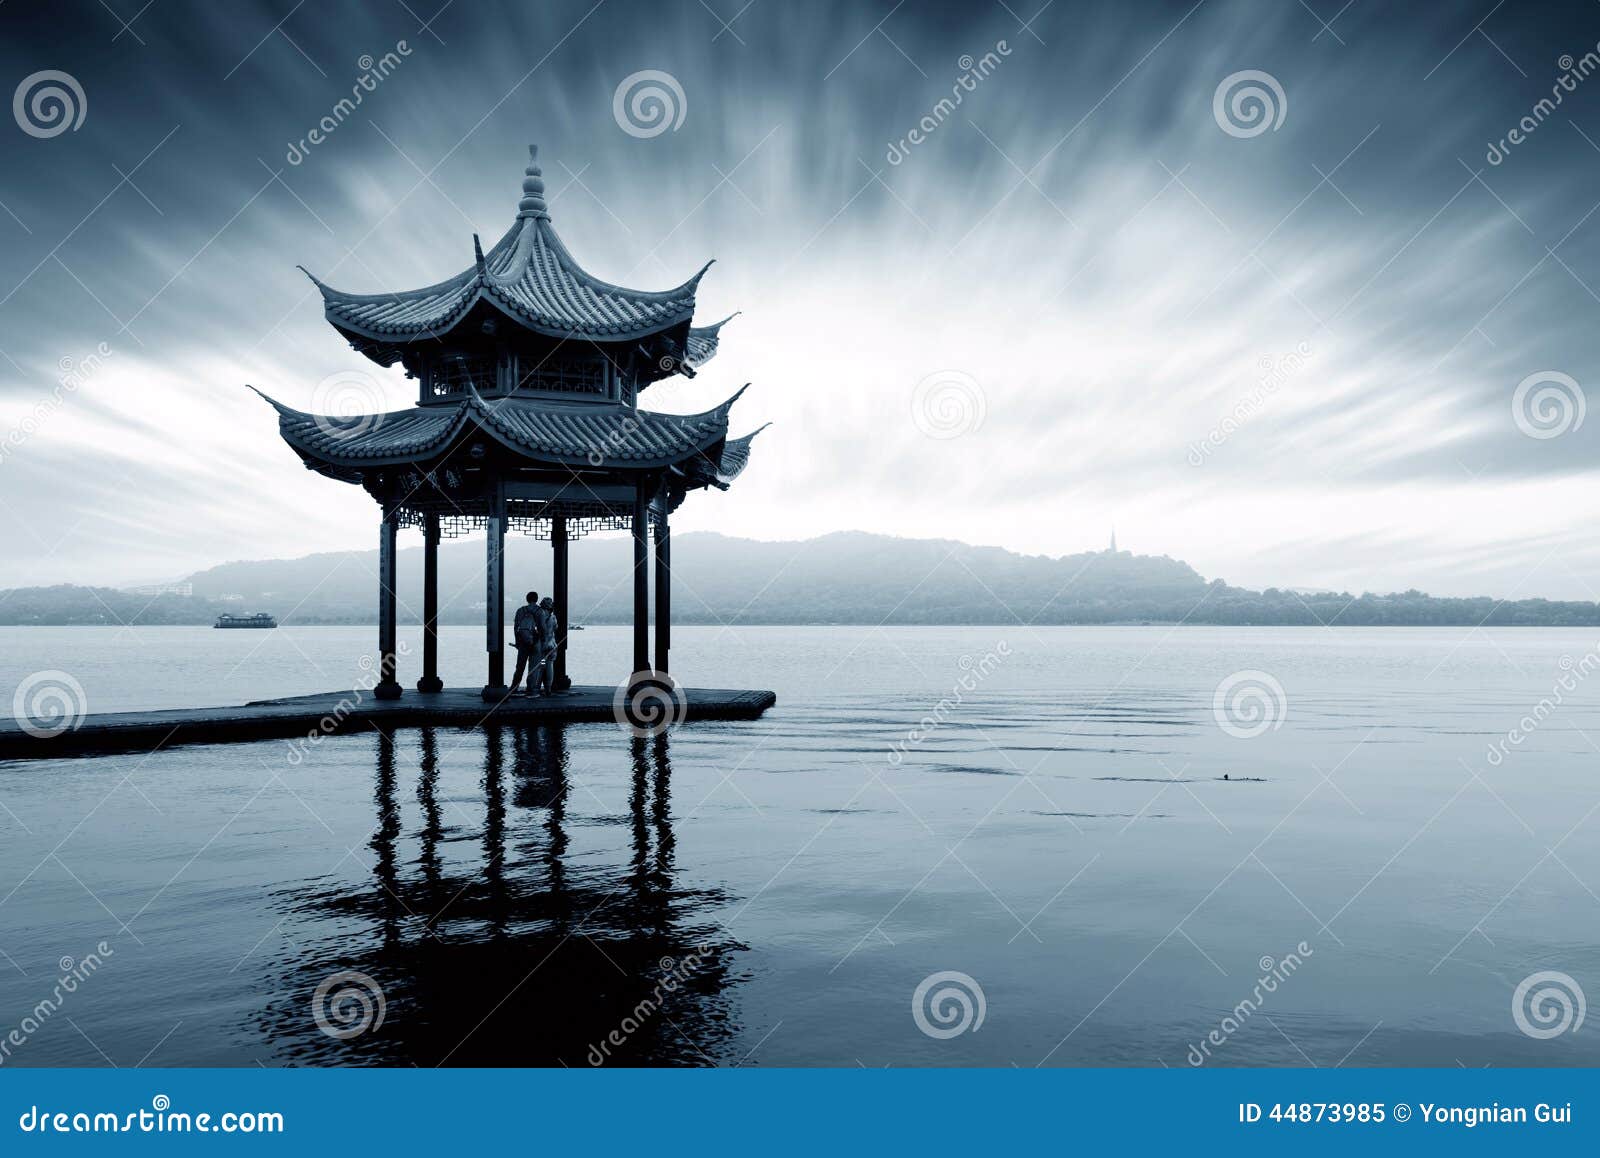 杭州西湖风景画手绘图片展示